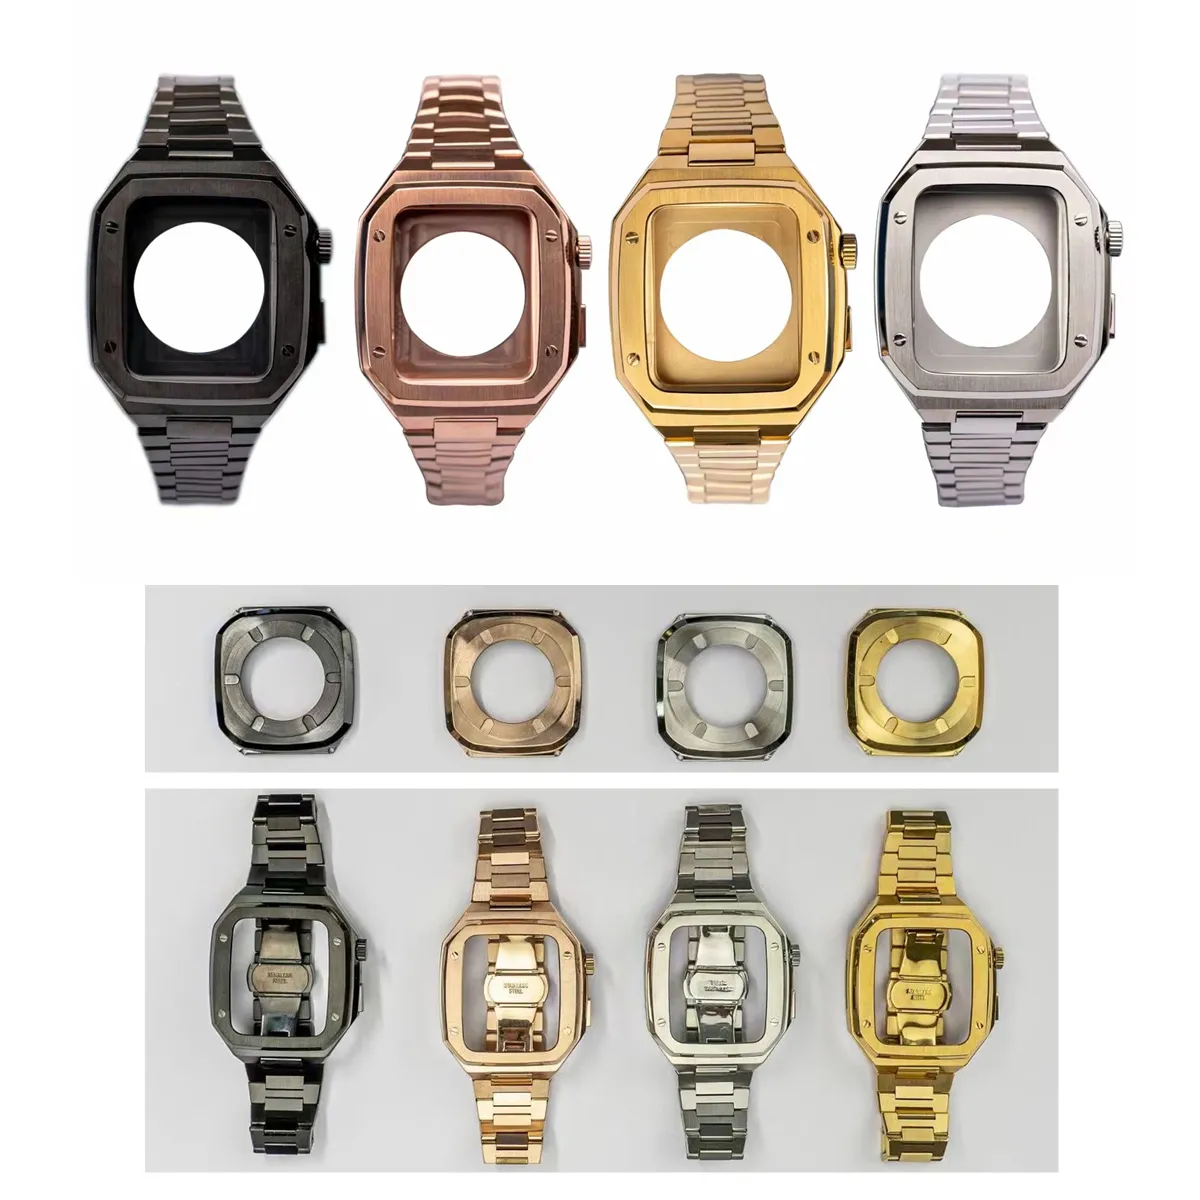 부드러운 실리콘 밴드 Wirst 스트랩에 맞는 전신 견고한 커버 증명 드롭 케이스 Apple Watch Iwatch Series 4 용 스크린 프로텍터가 내장 된